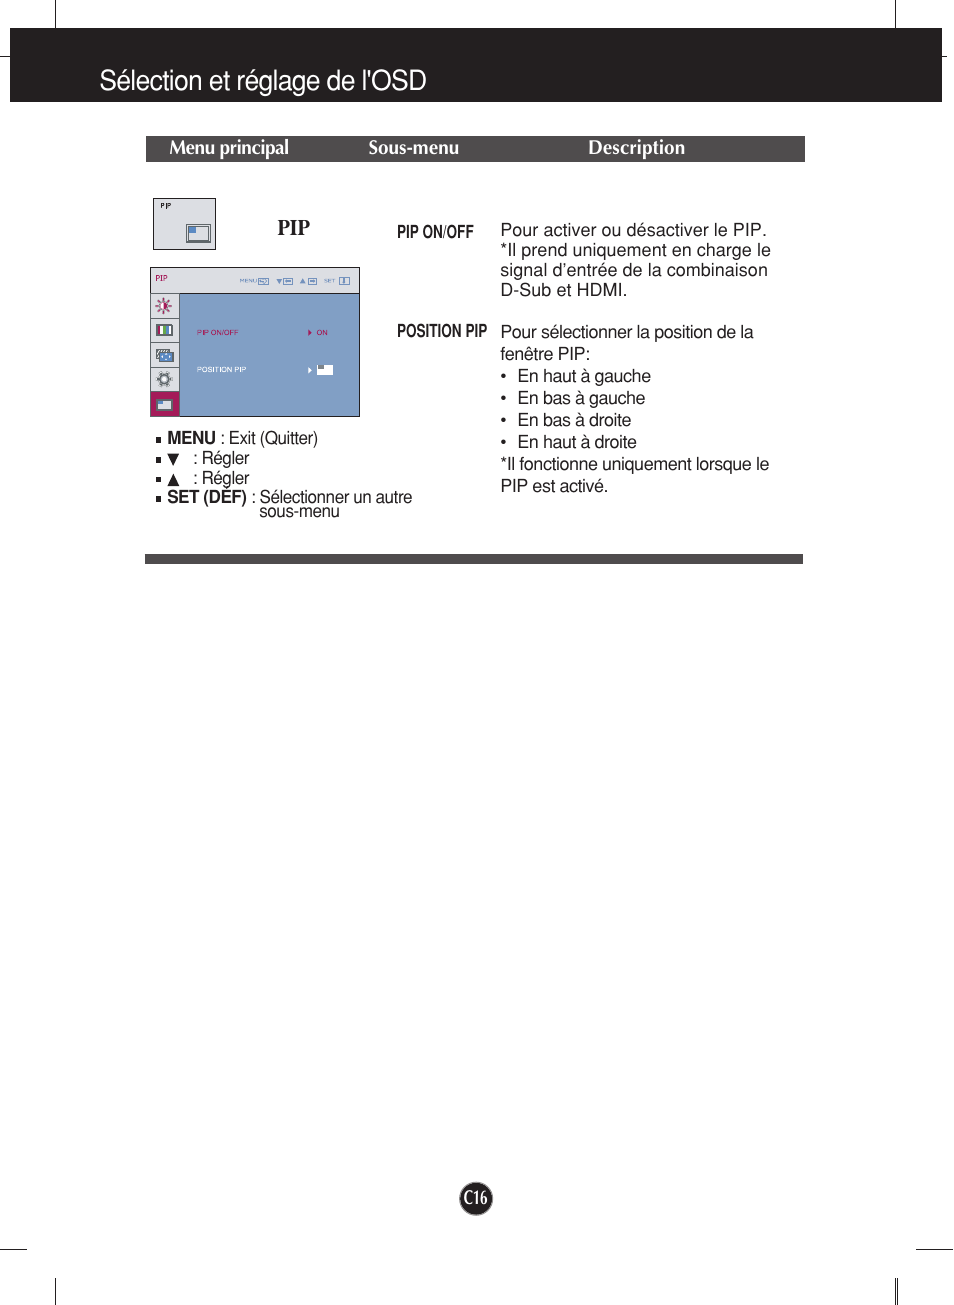 Sélection et réglage de l'osd | LG W2452V-PF Manuel d'utilisation | Page 17 / 27